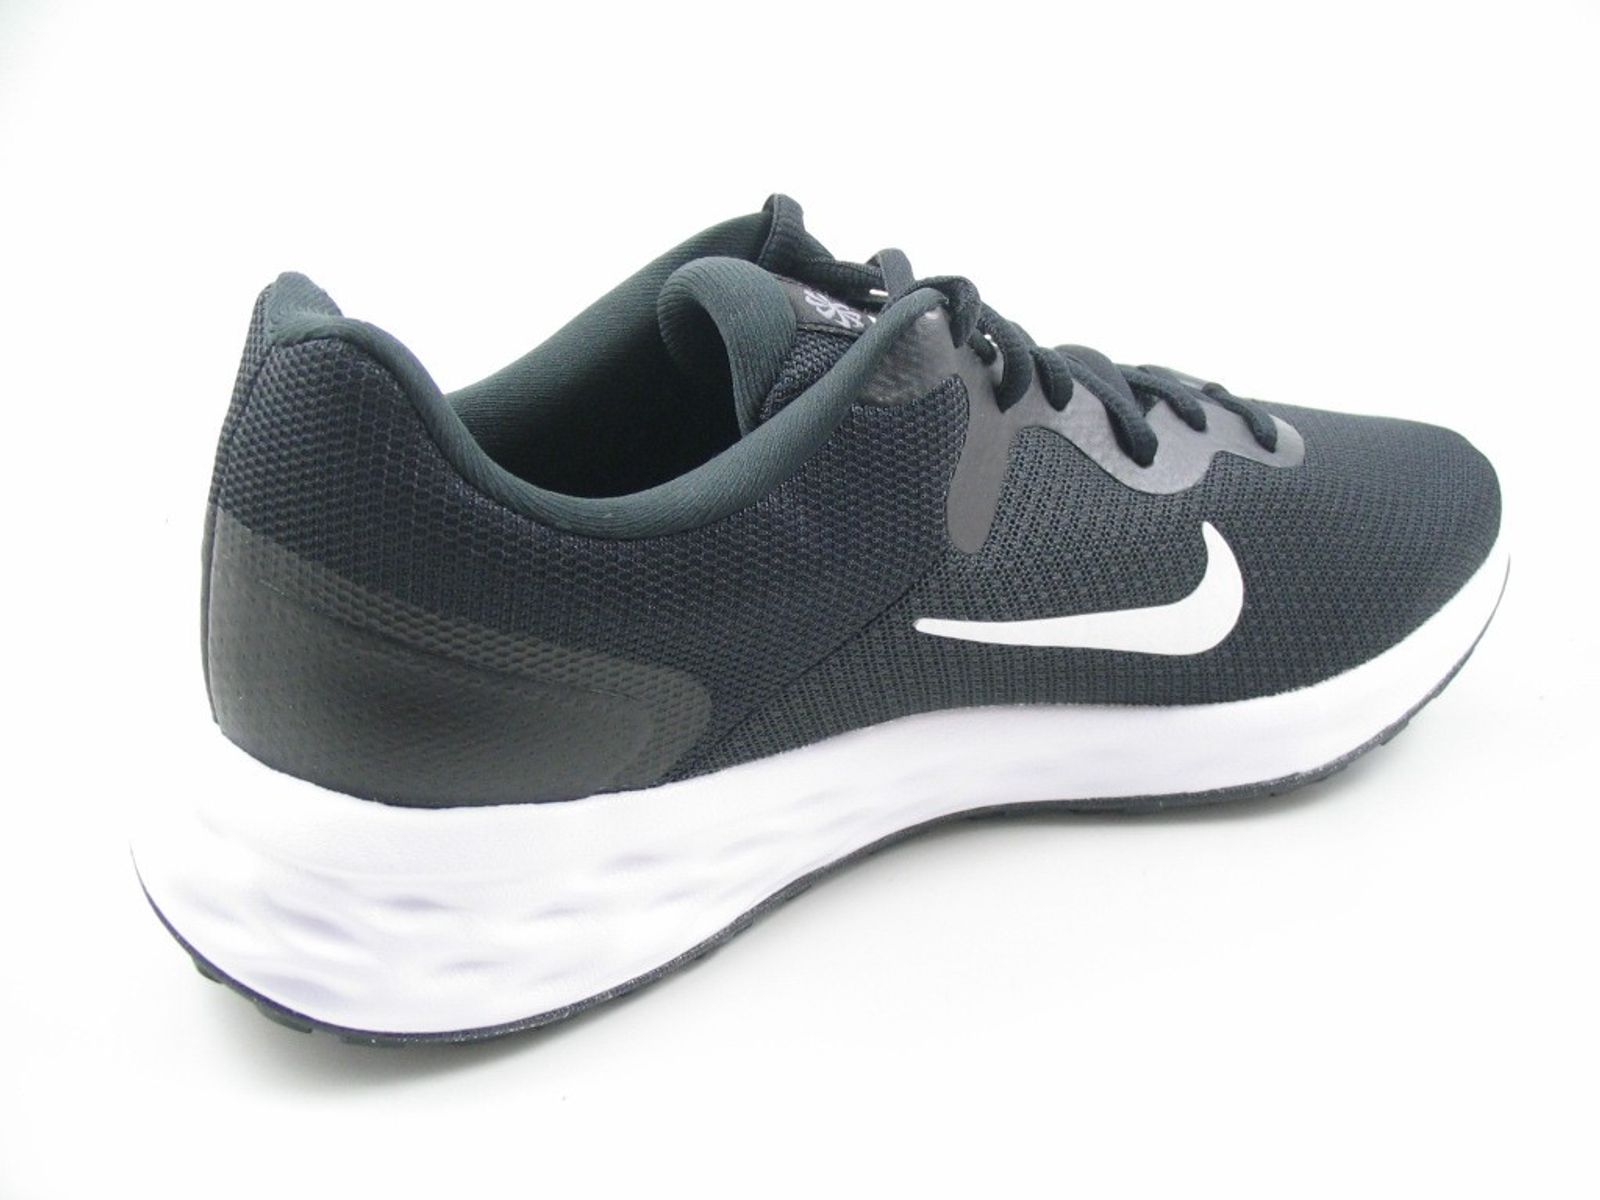 Schuh von Nike, 44